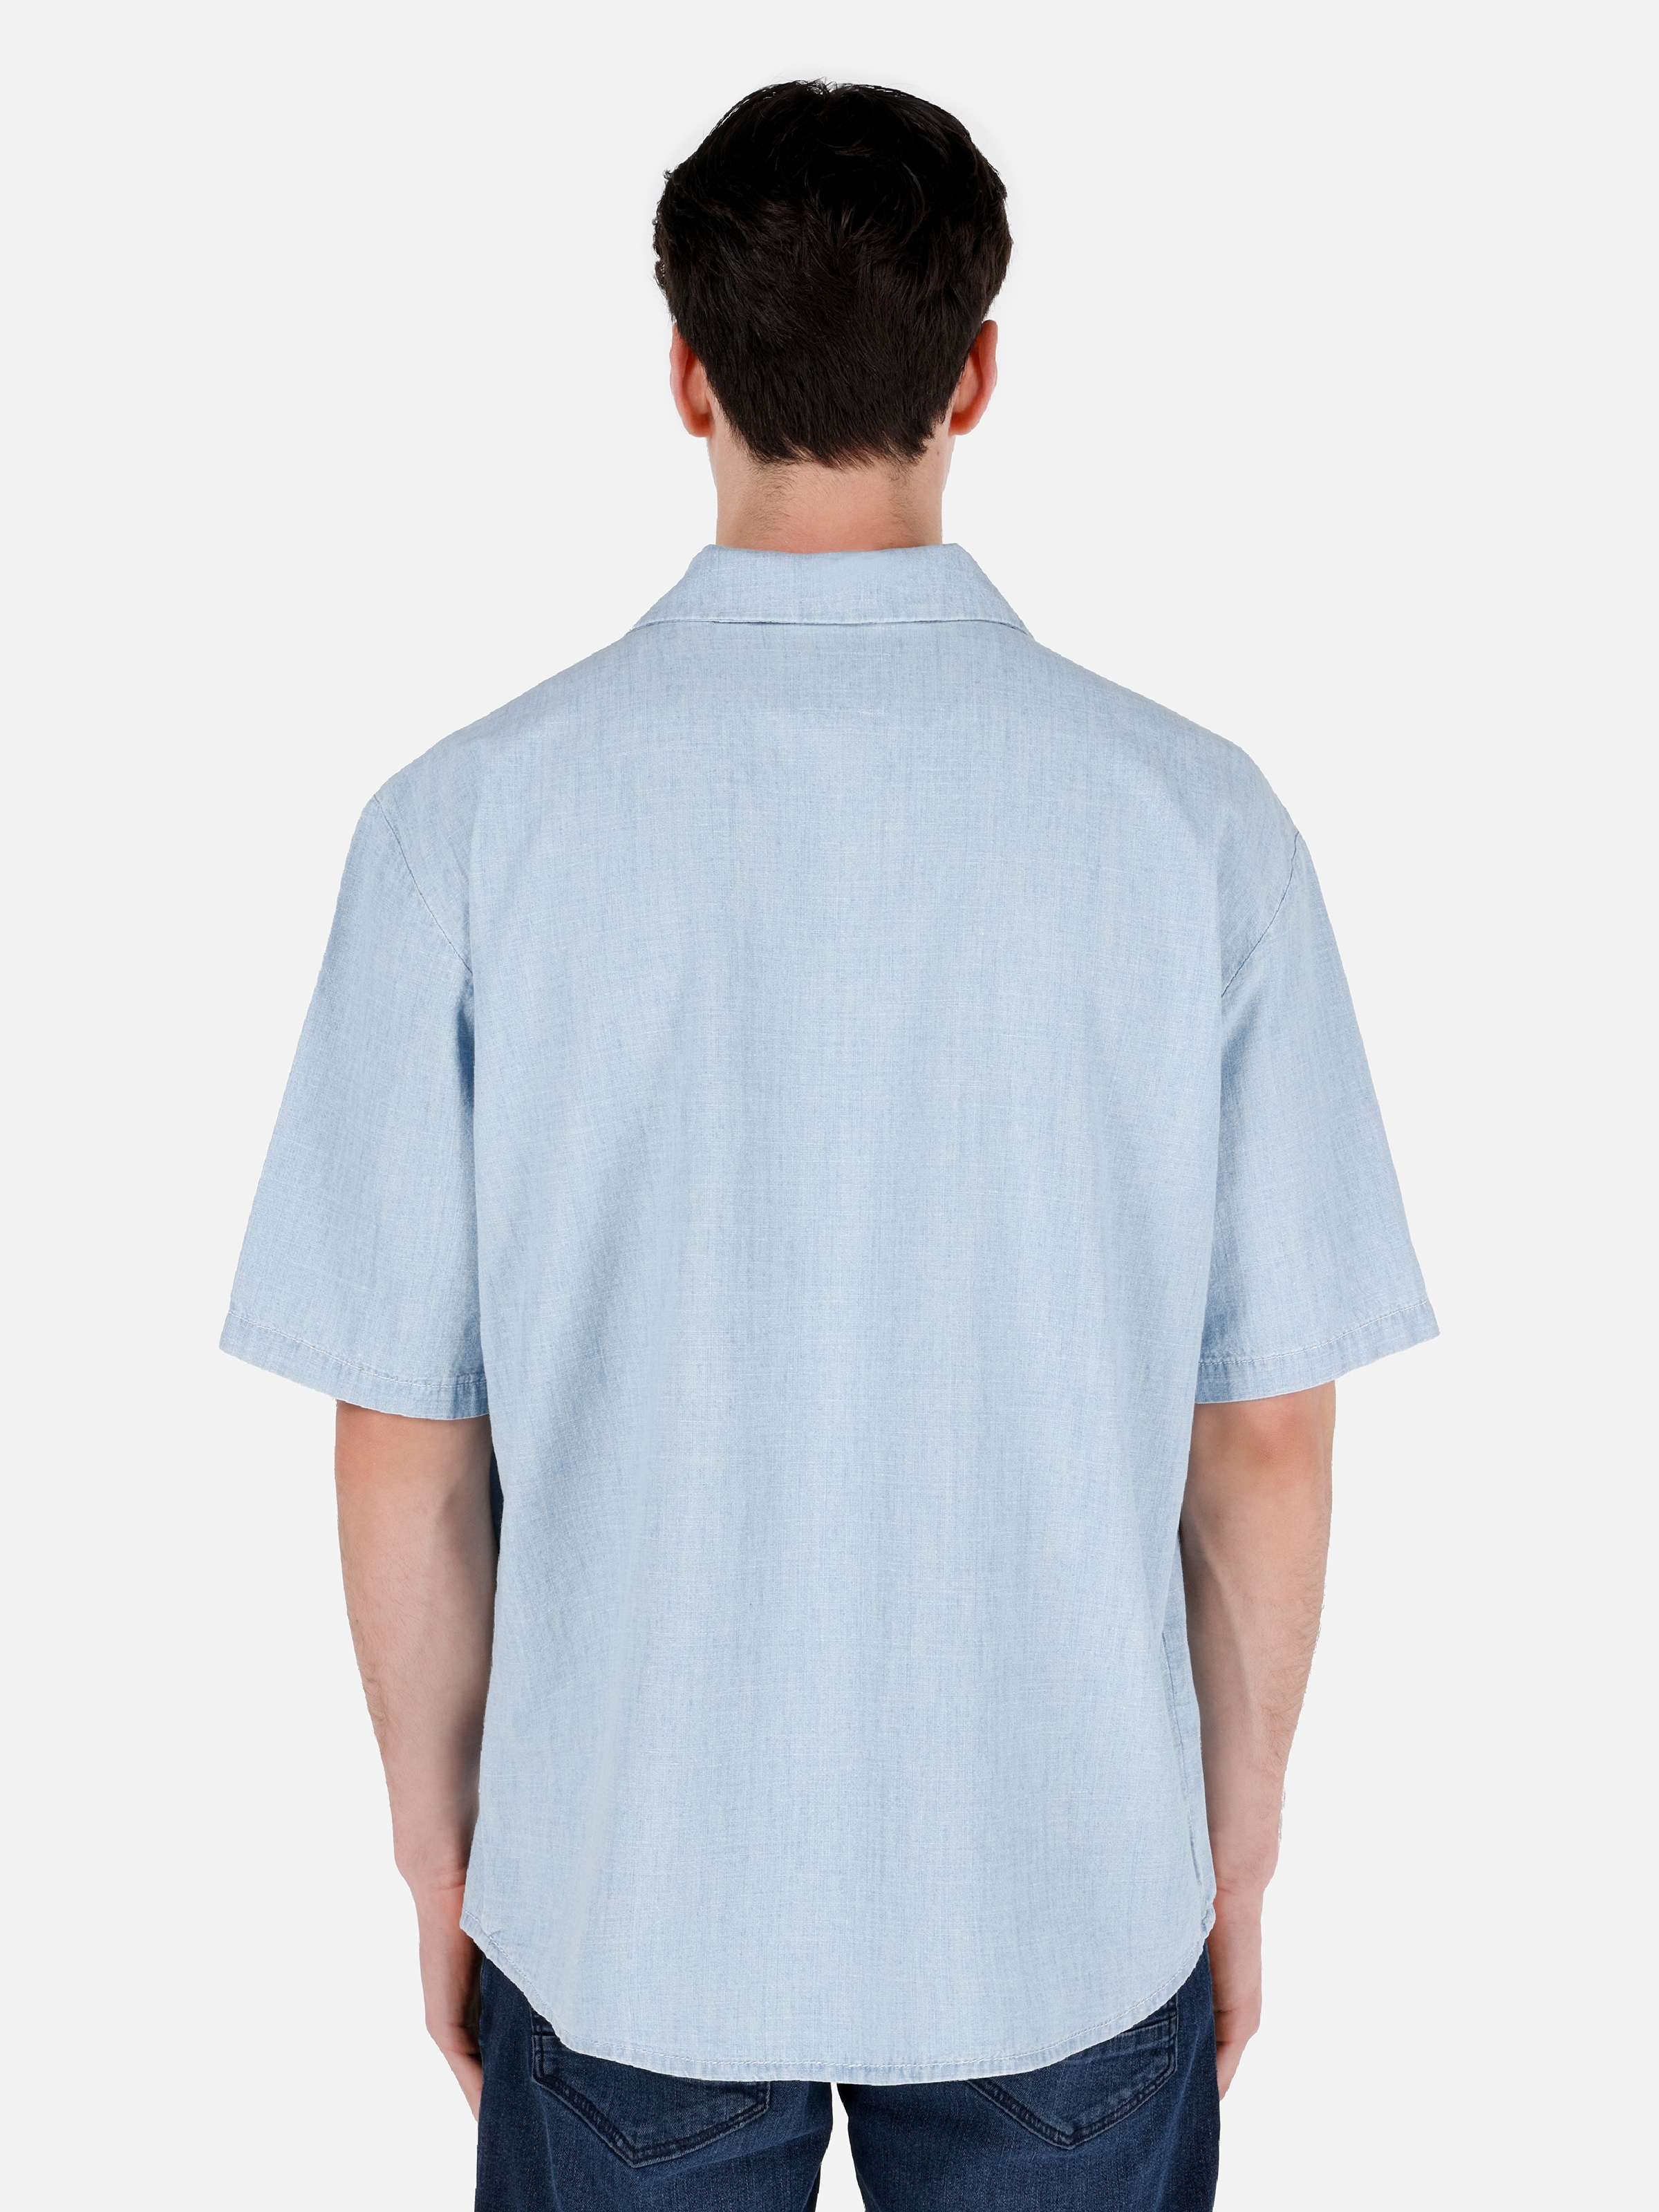 176 Joseph Rahat Kesim Shirt Yaka Cepli Mavi Erkek Jean Kısa Kol Gömlek Cl1069576